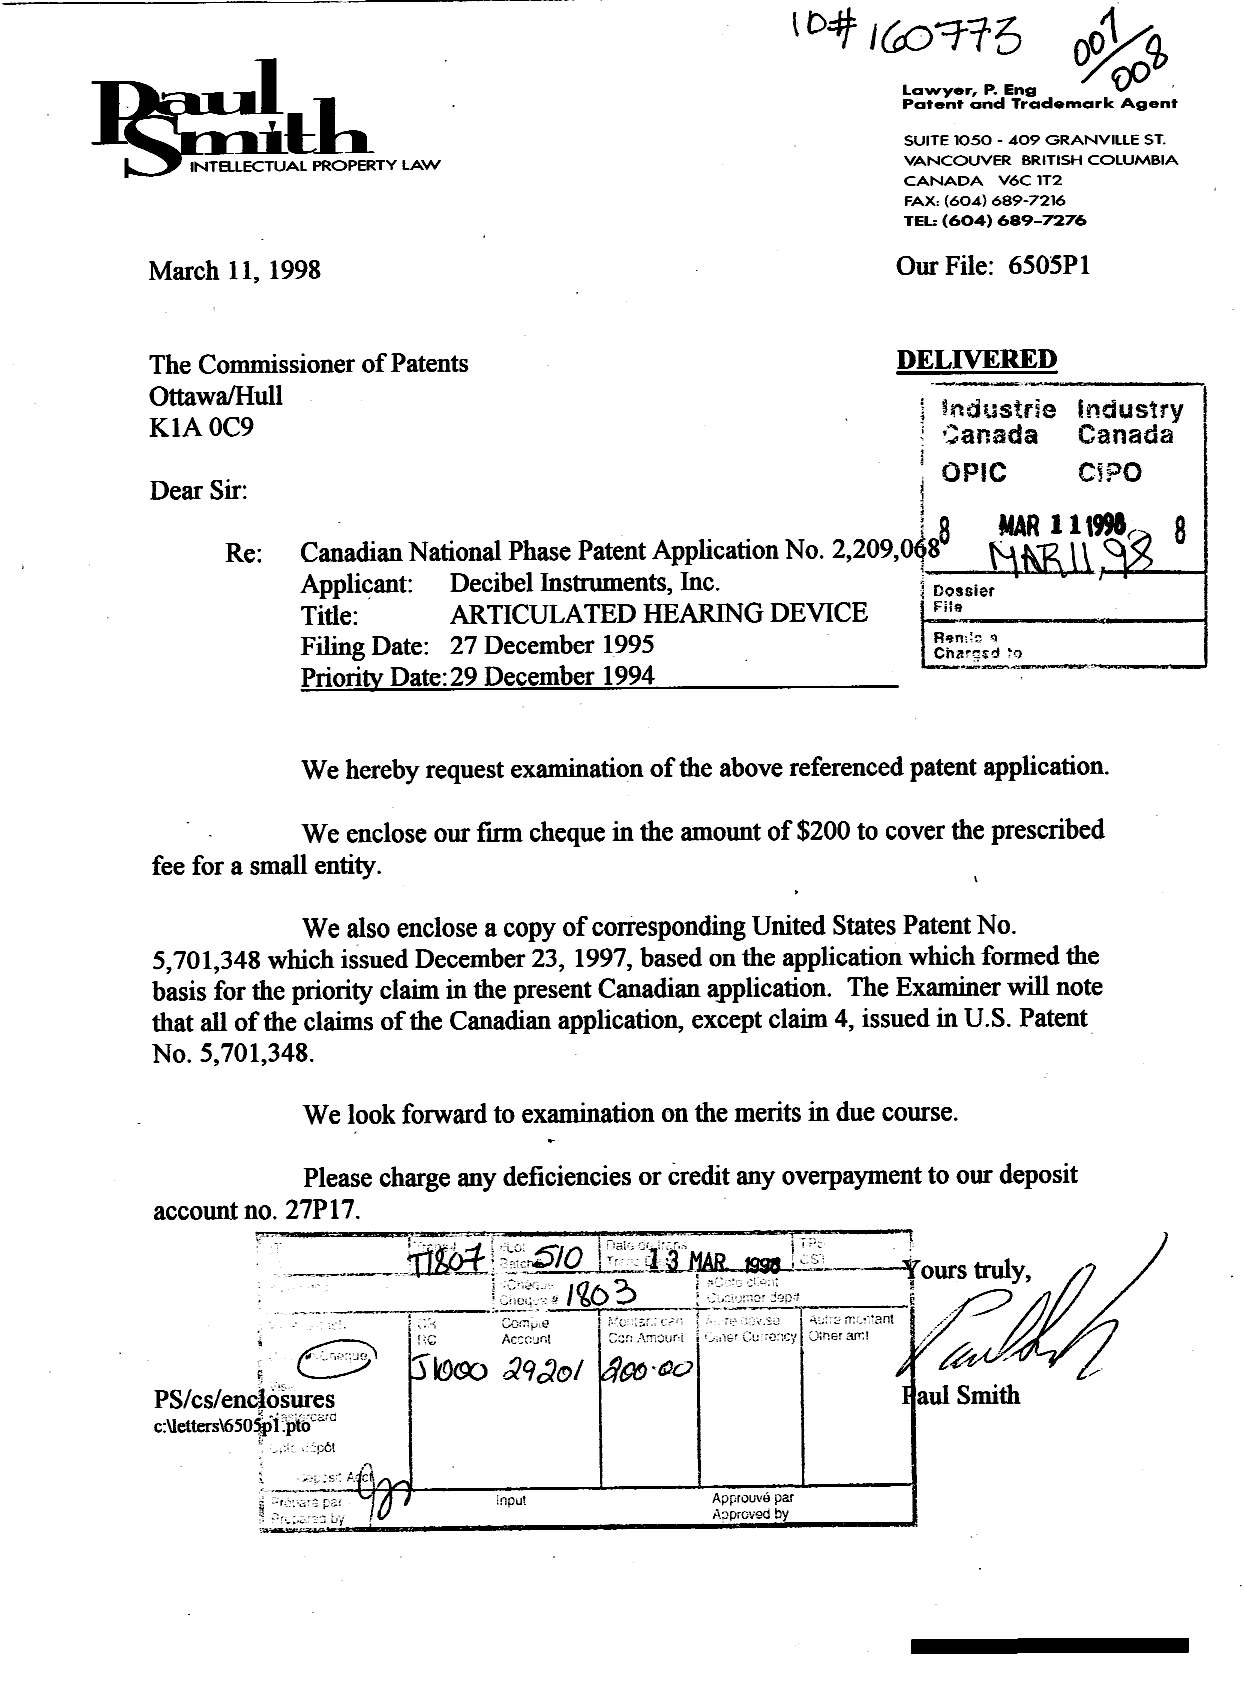 Document de brevet canadien 2209068. Poursuite-Amendment 19980311. Image 1 de 1